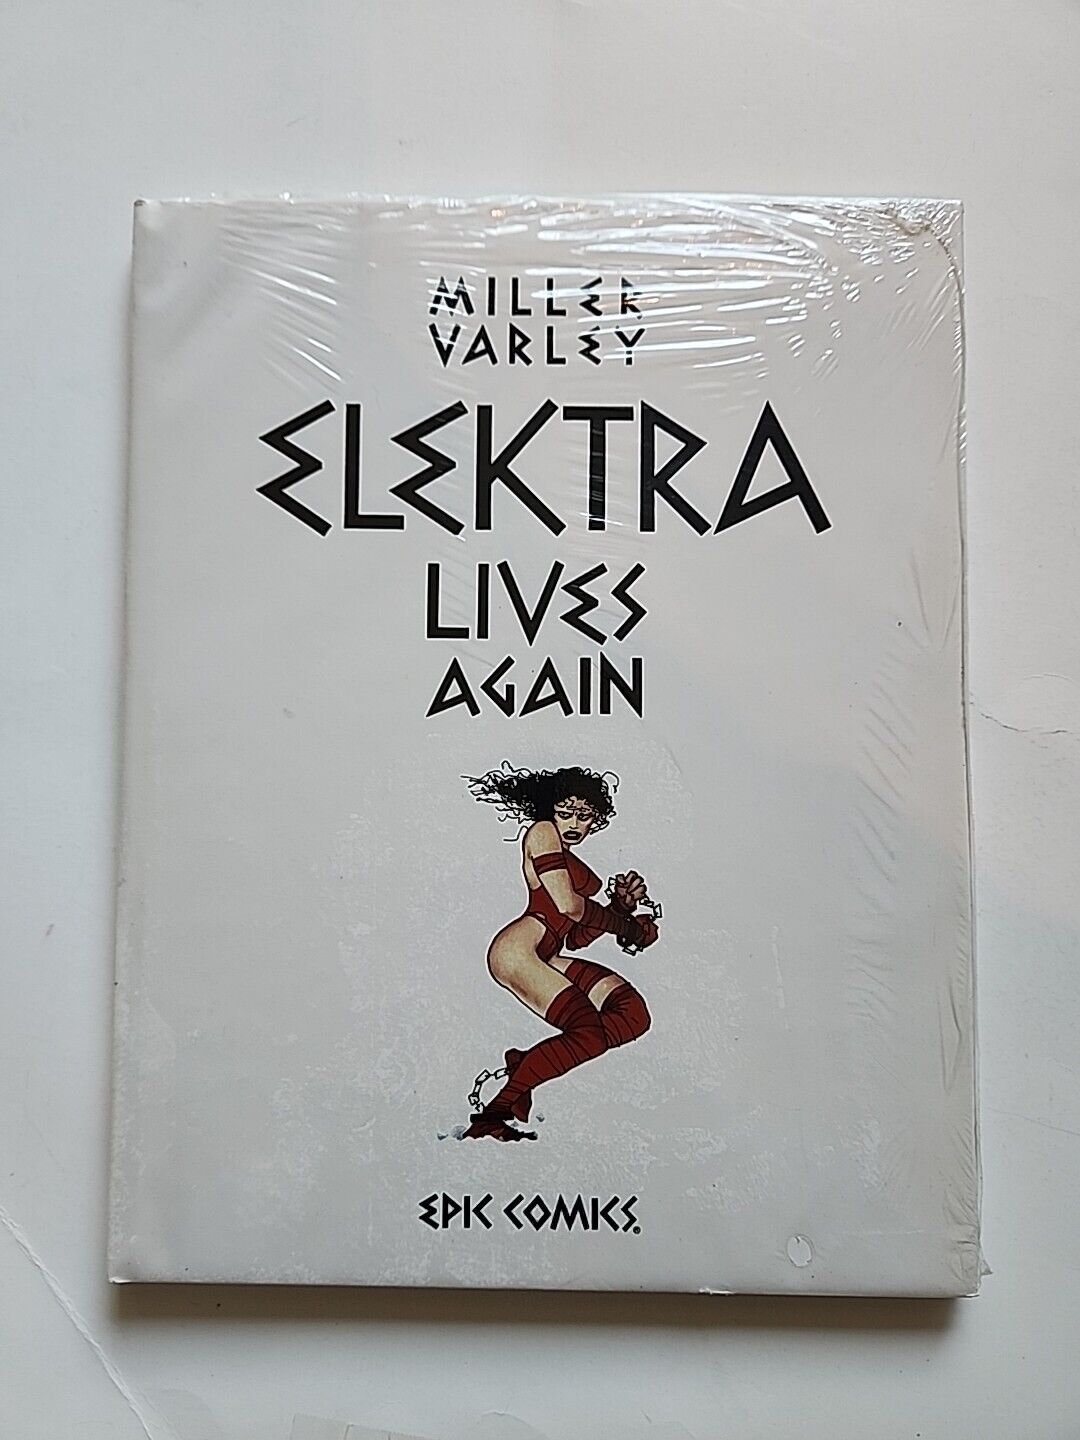 ELEKTRA LIVES AGAIN - Sealed - FRANK MILLER, OVERSIZE HARDCOVER GRAPHIC NOVEL